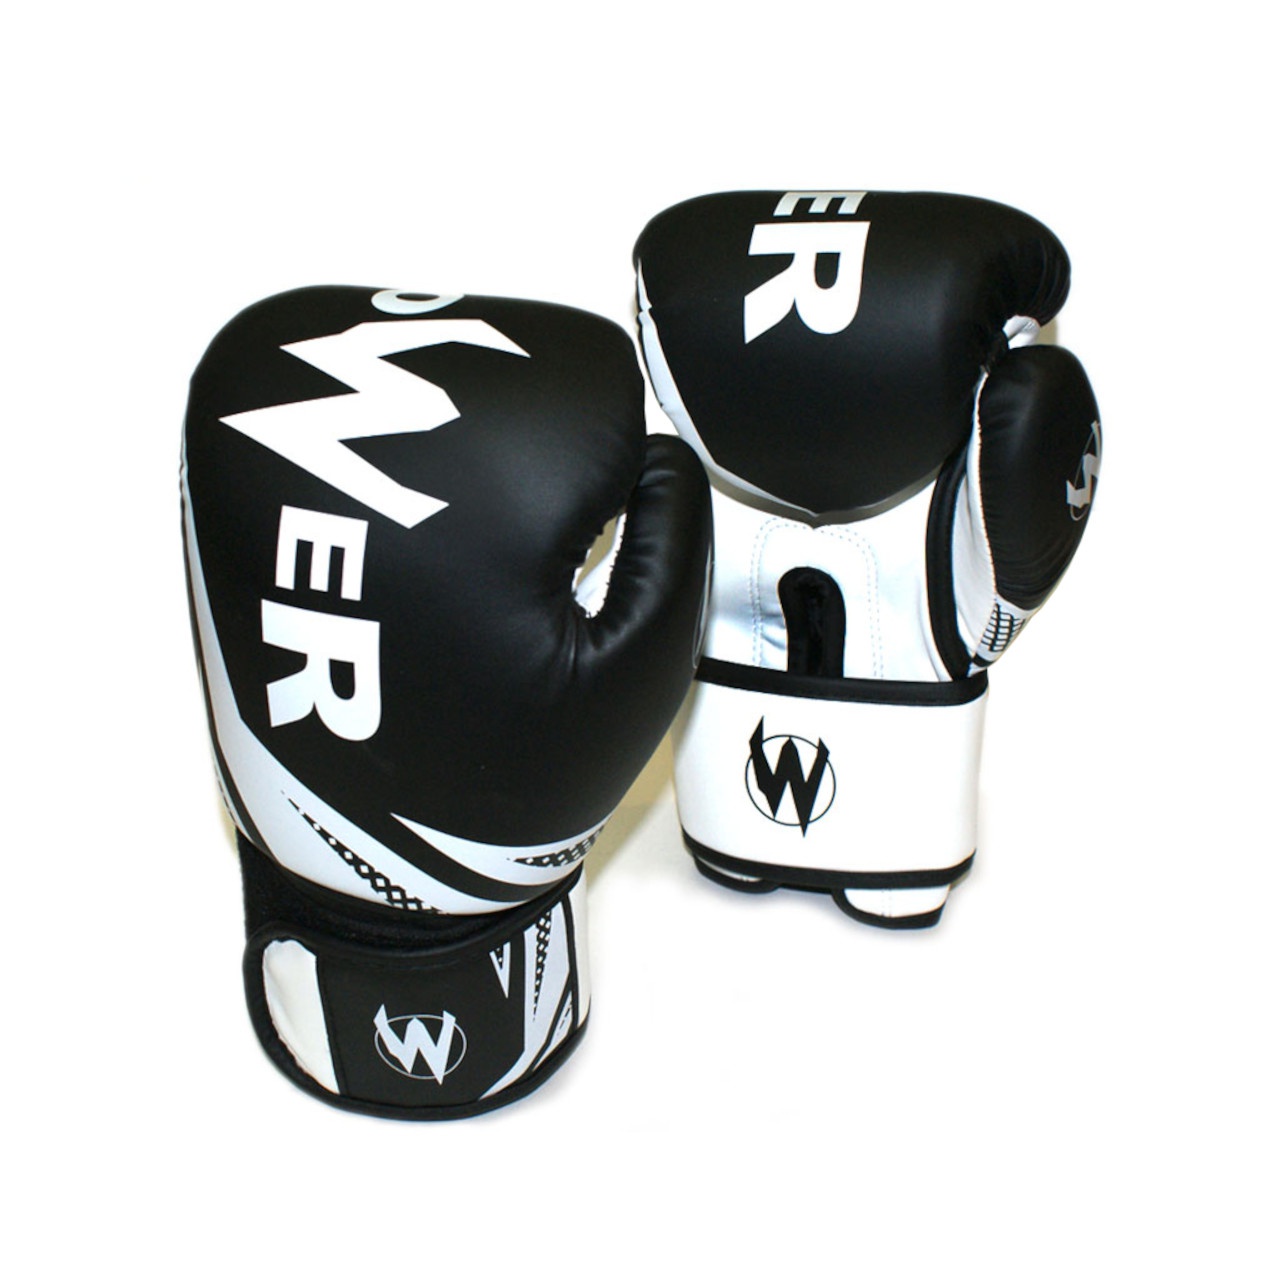 Рукавички боксерські POWER чорні з білими елементами 12 унцій POW-W-Ч12